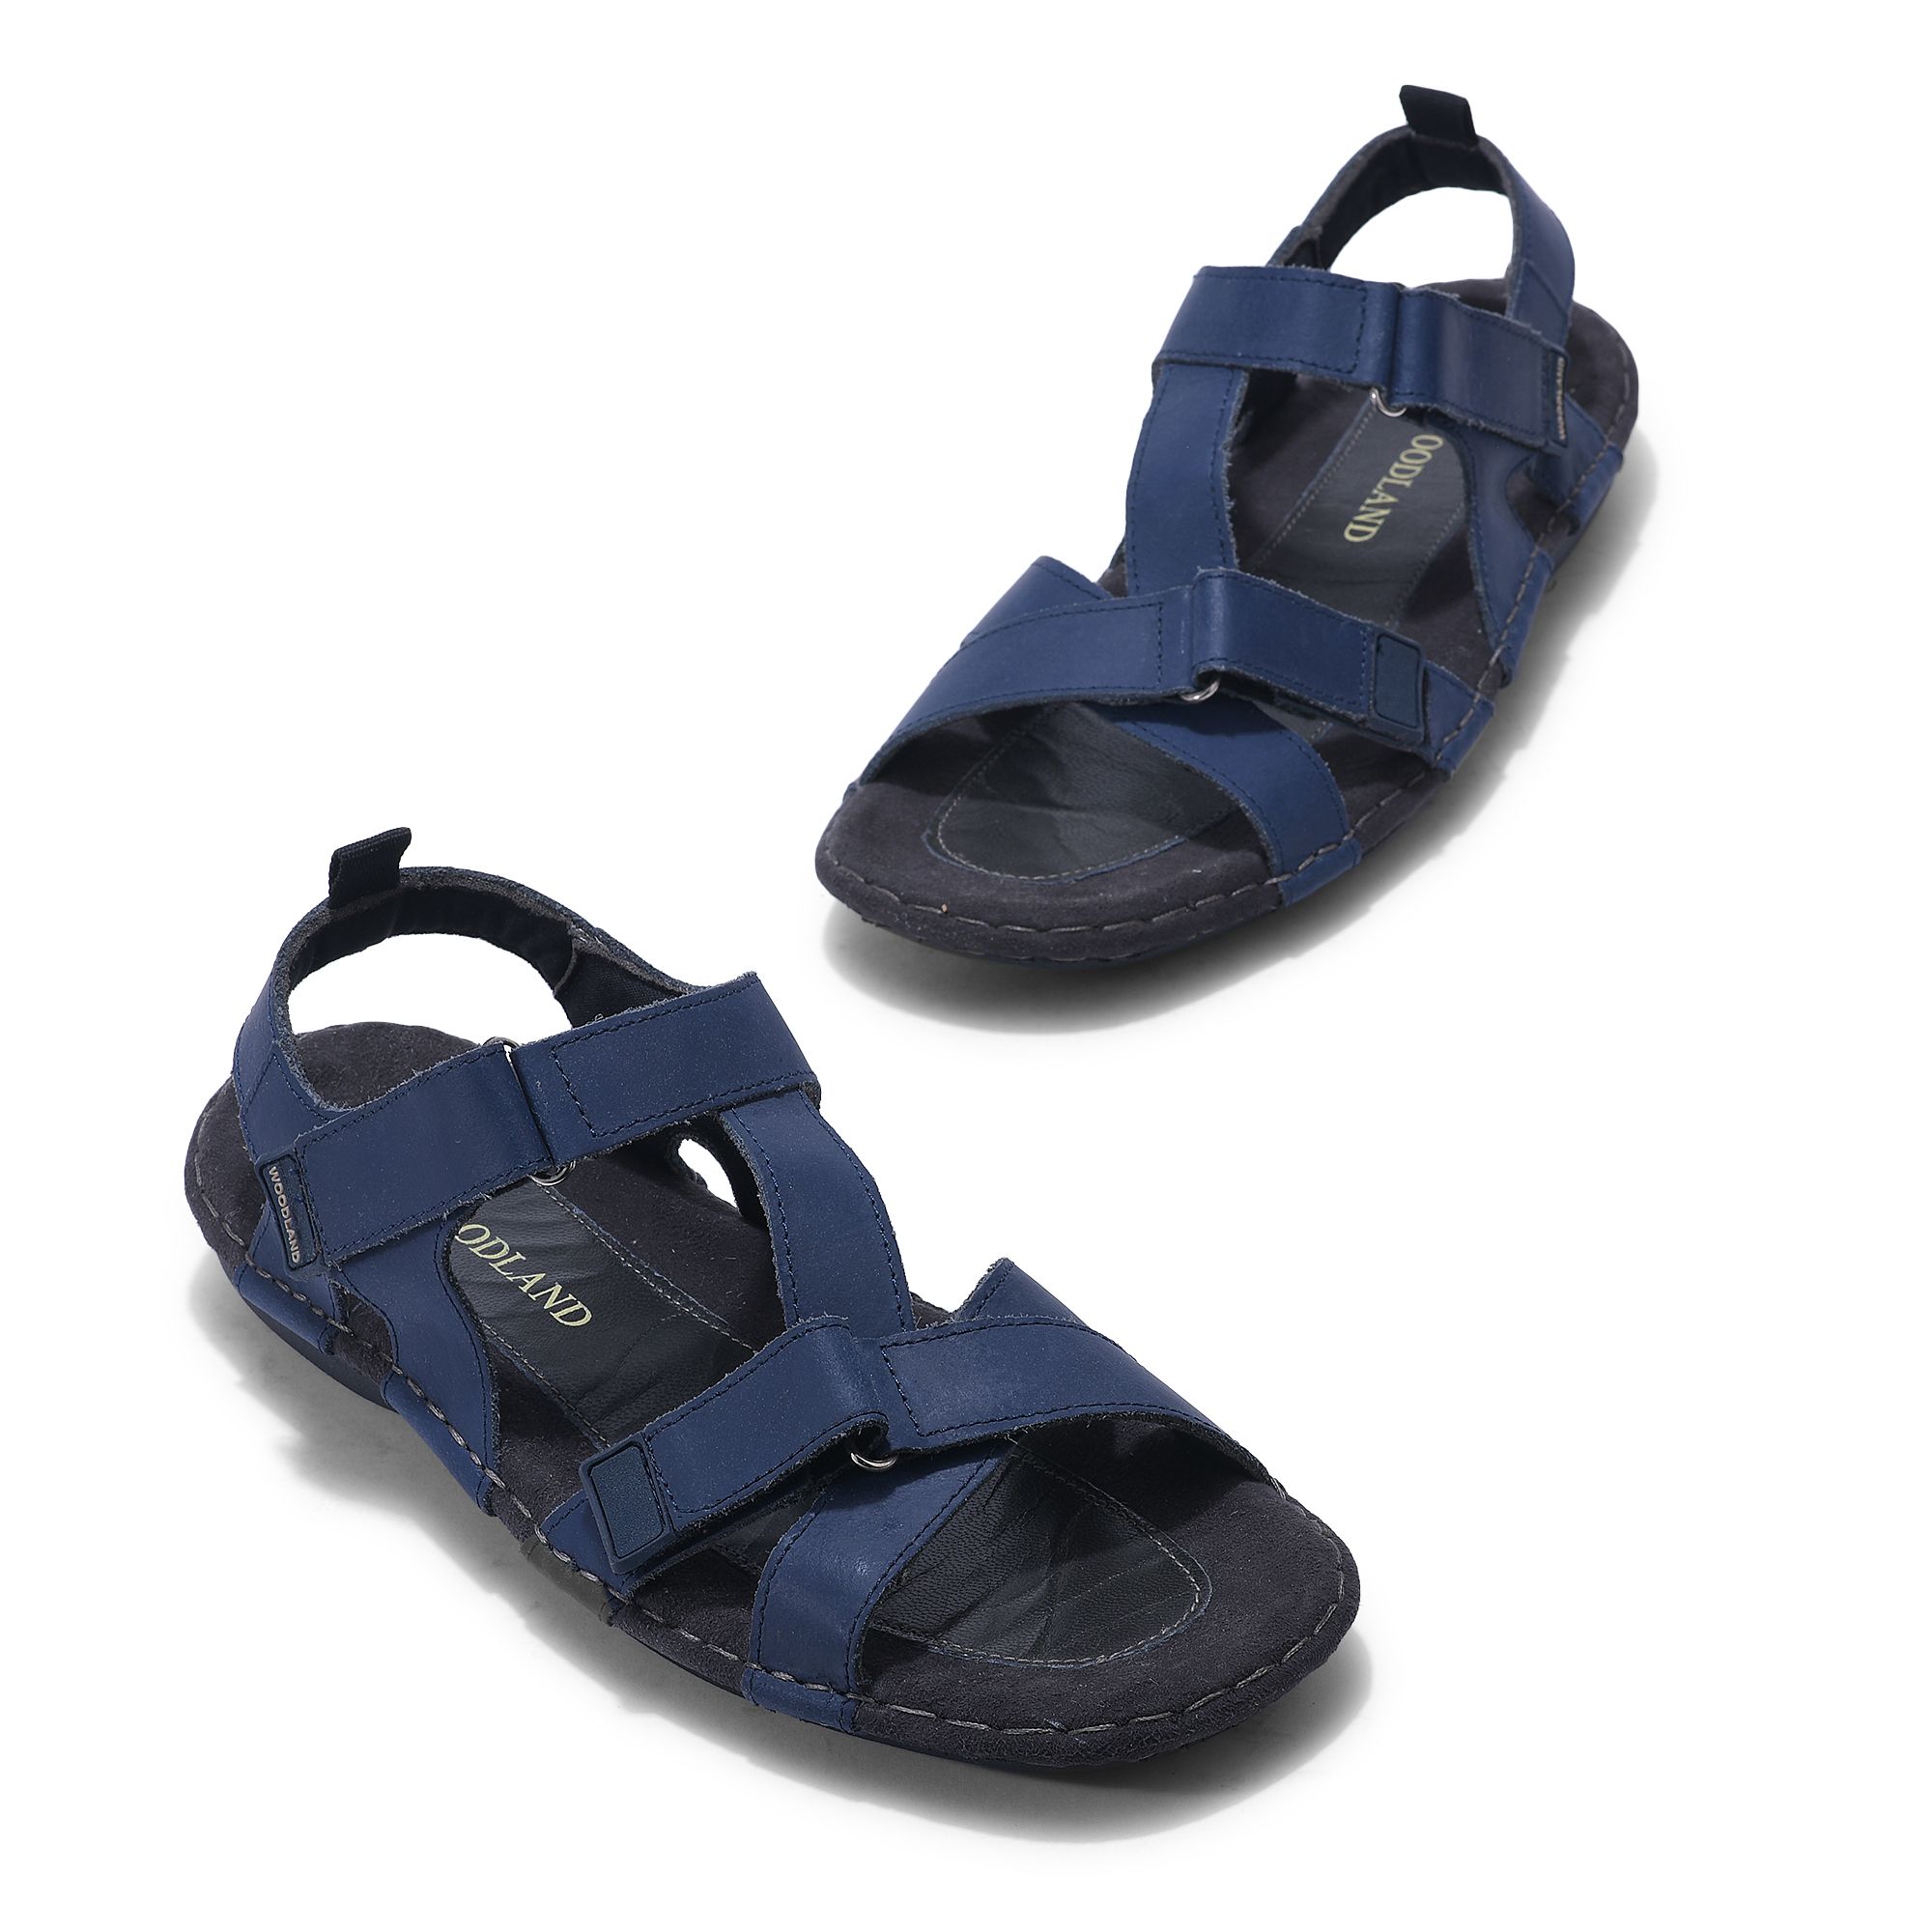 Pro-Comfort Sandals NAVY